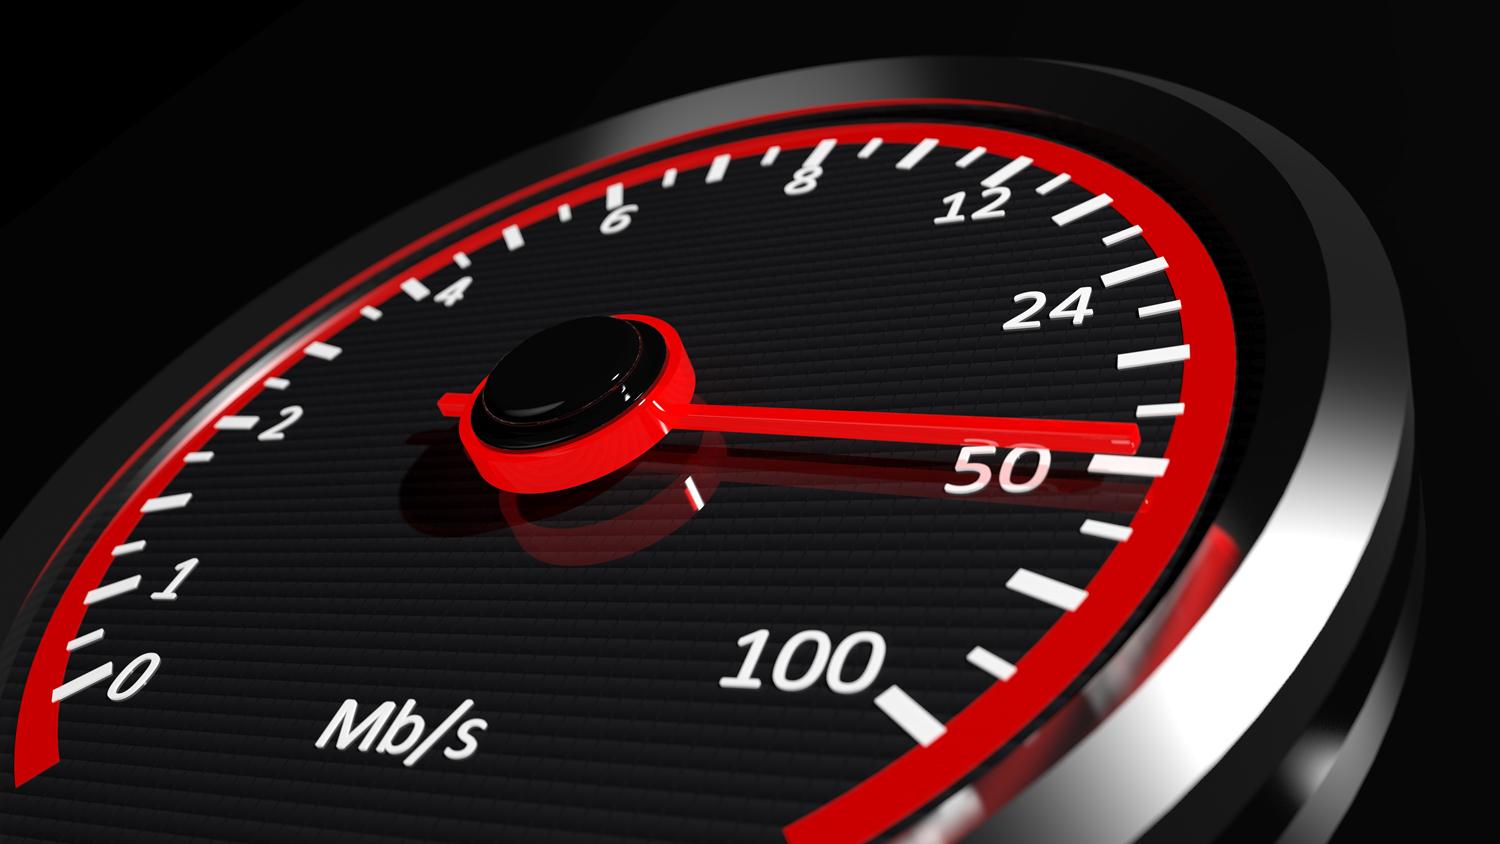 internett speed test